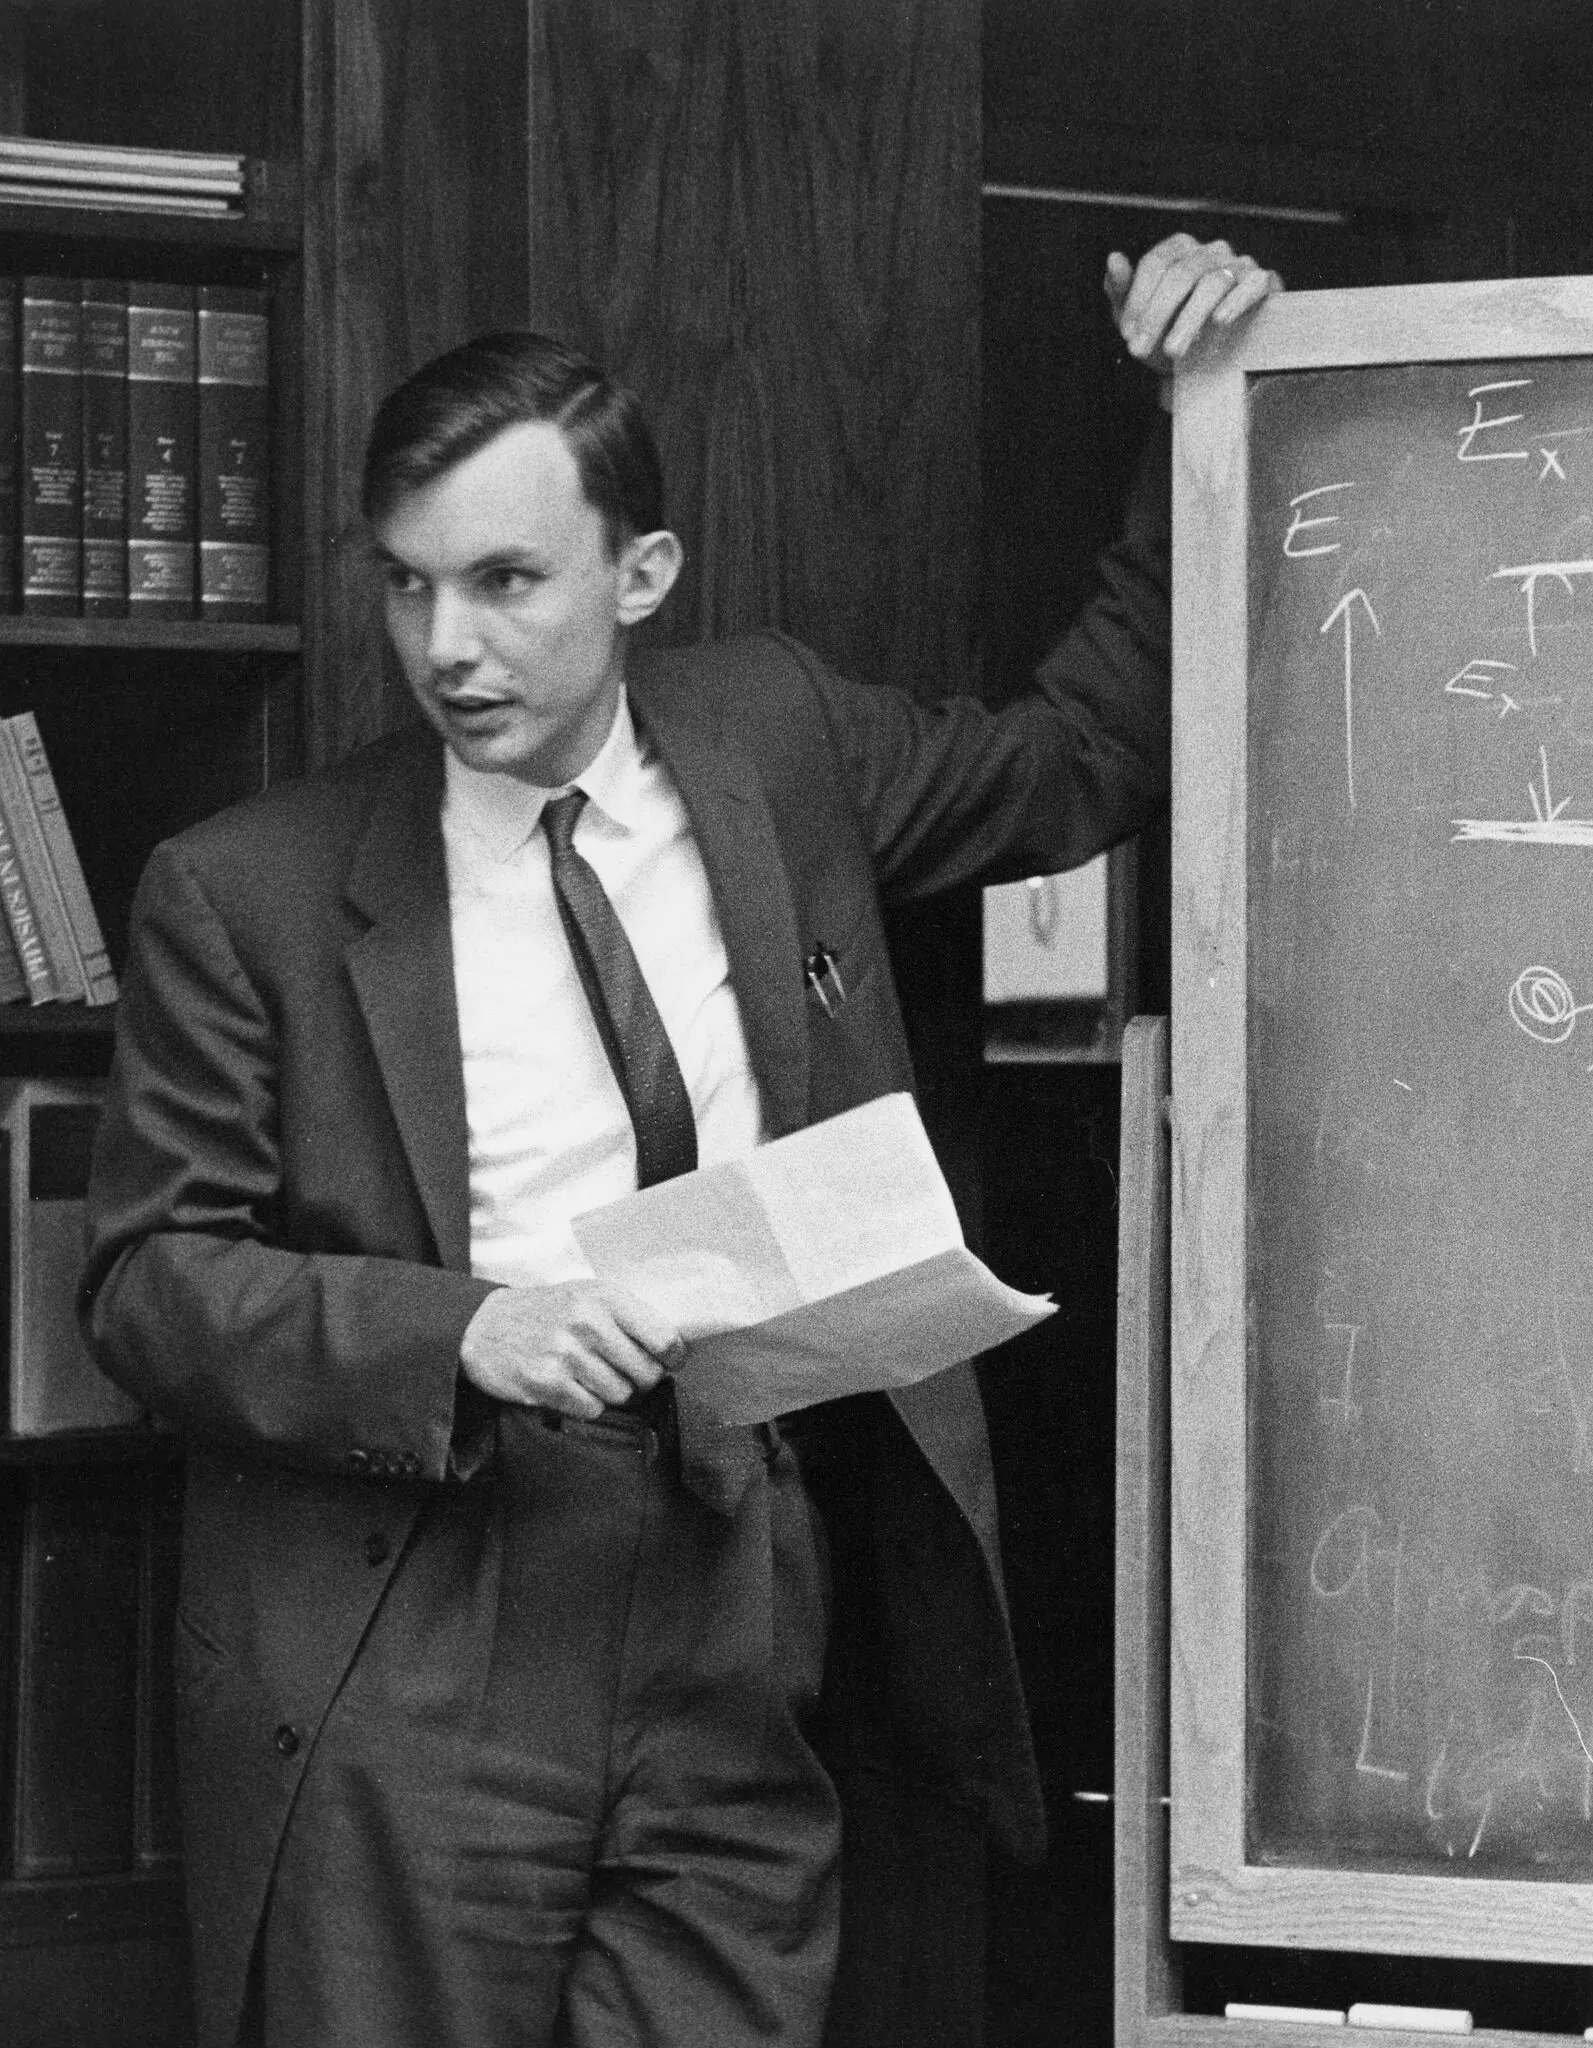 Dr. Branscomb em 1960 dando uma palestra em um seminário sobre física de plasma.Crédito...Arquivos Visuais AIP Emilio Segrè